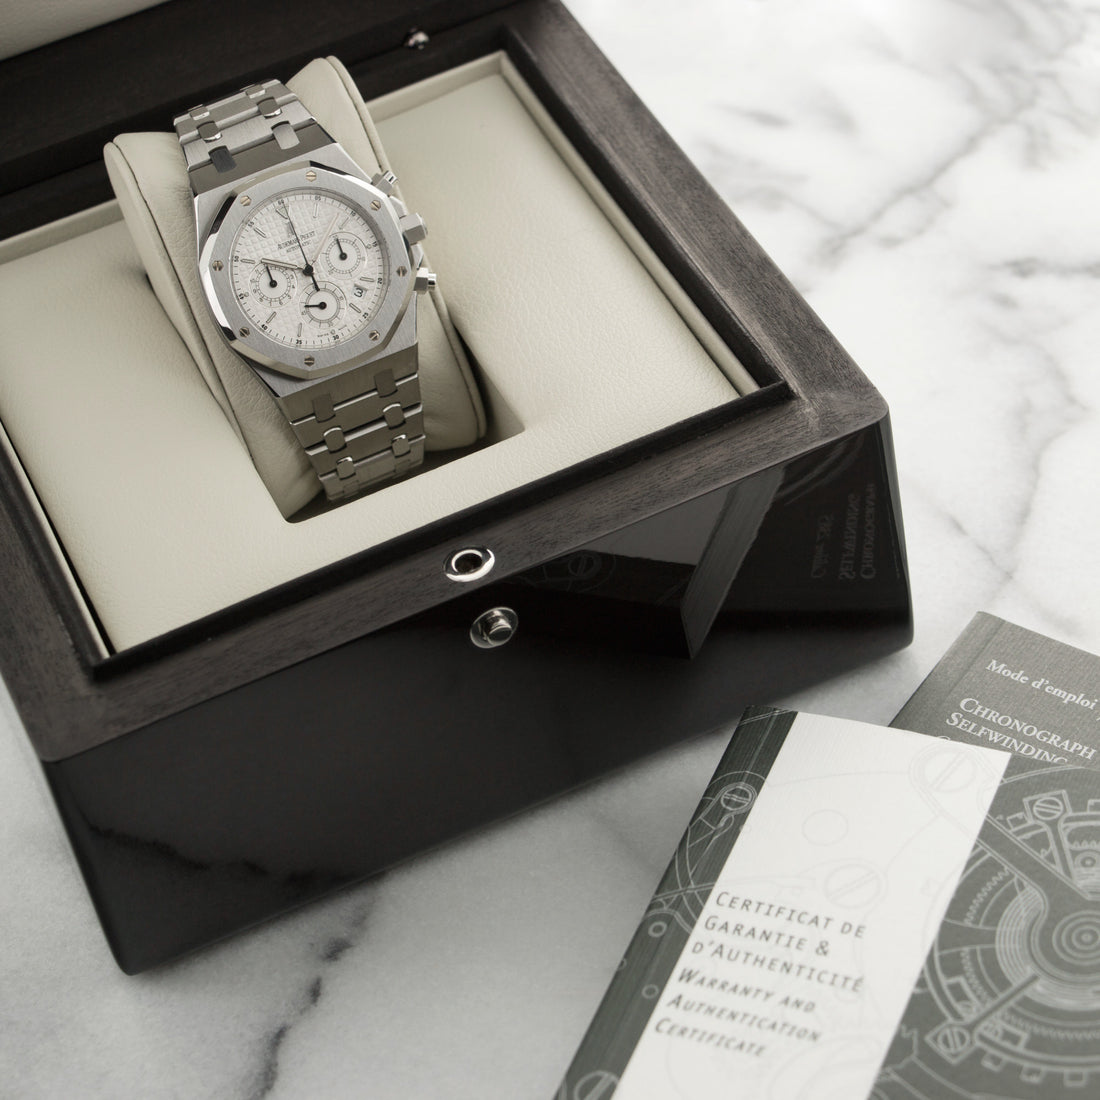 Audemars Piguet Steel Royal Oak Chronograph Watch, ref. 25860